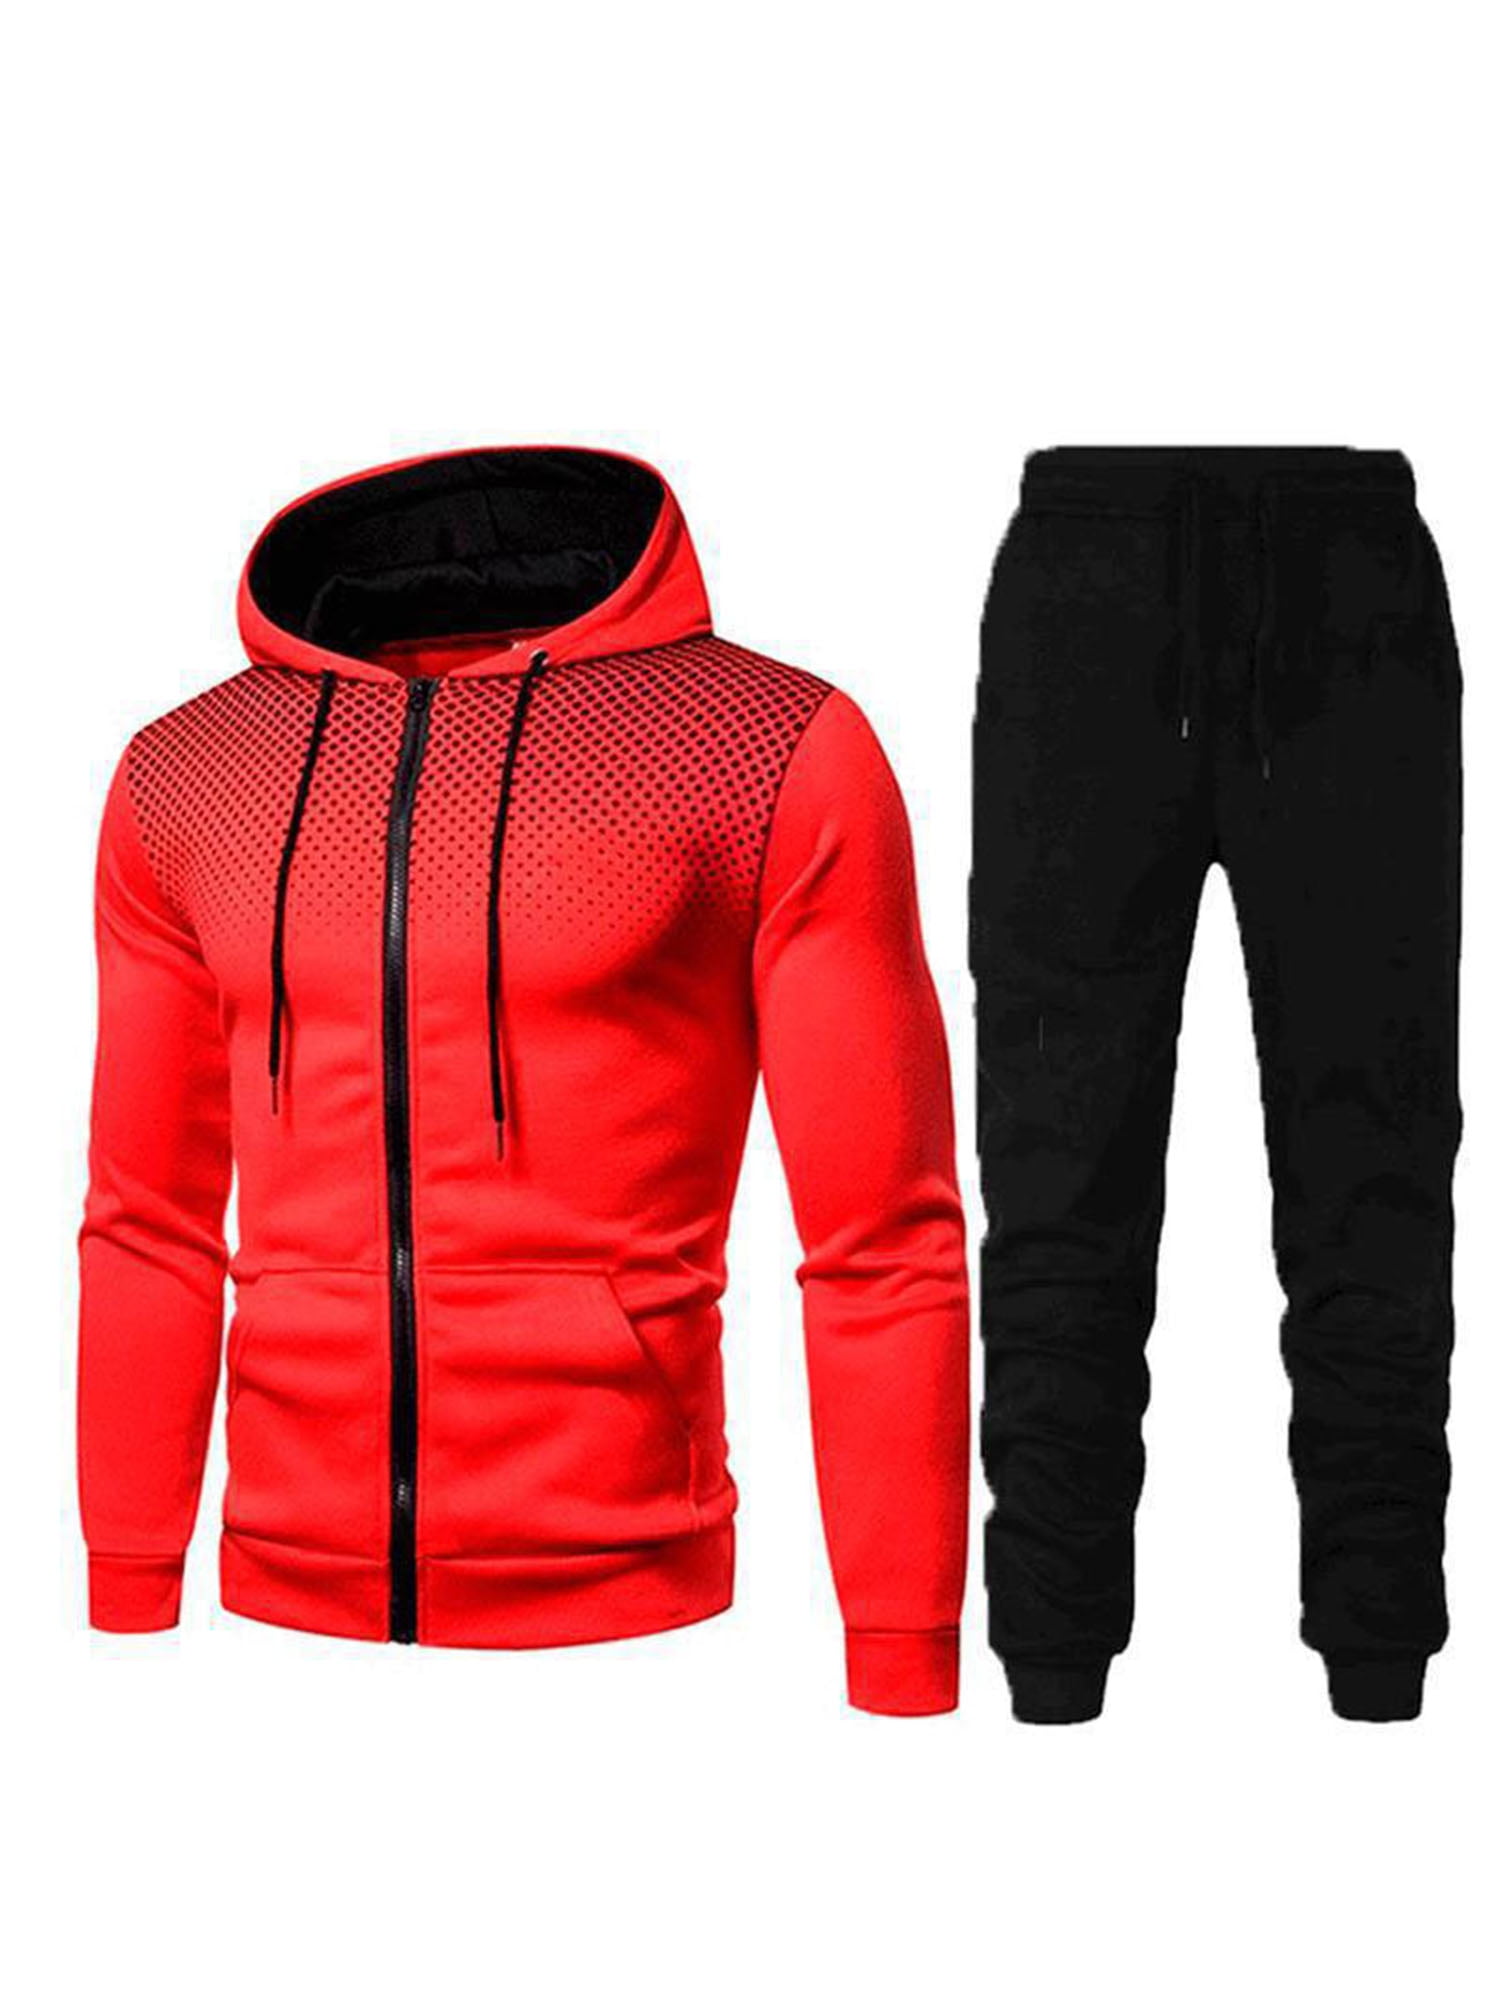 Details about   Men Athletic Casual 2 Piece Tracksuit Pant Sweatshirt Jacket Sweatsuit Sport Set 